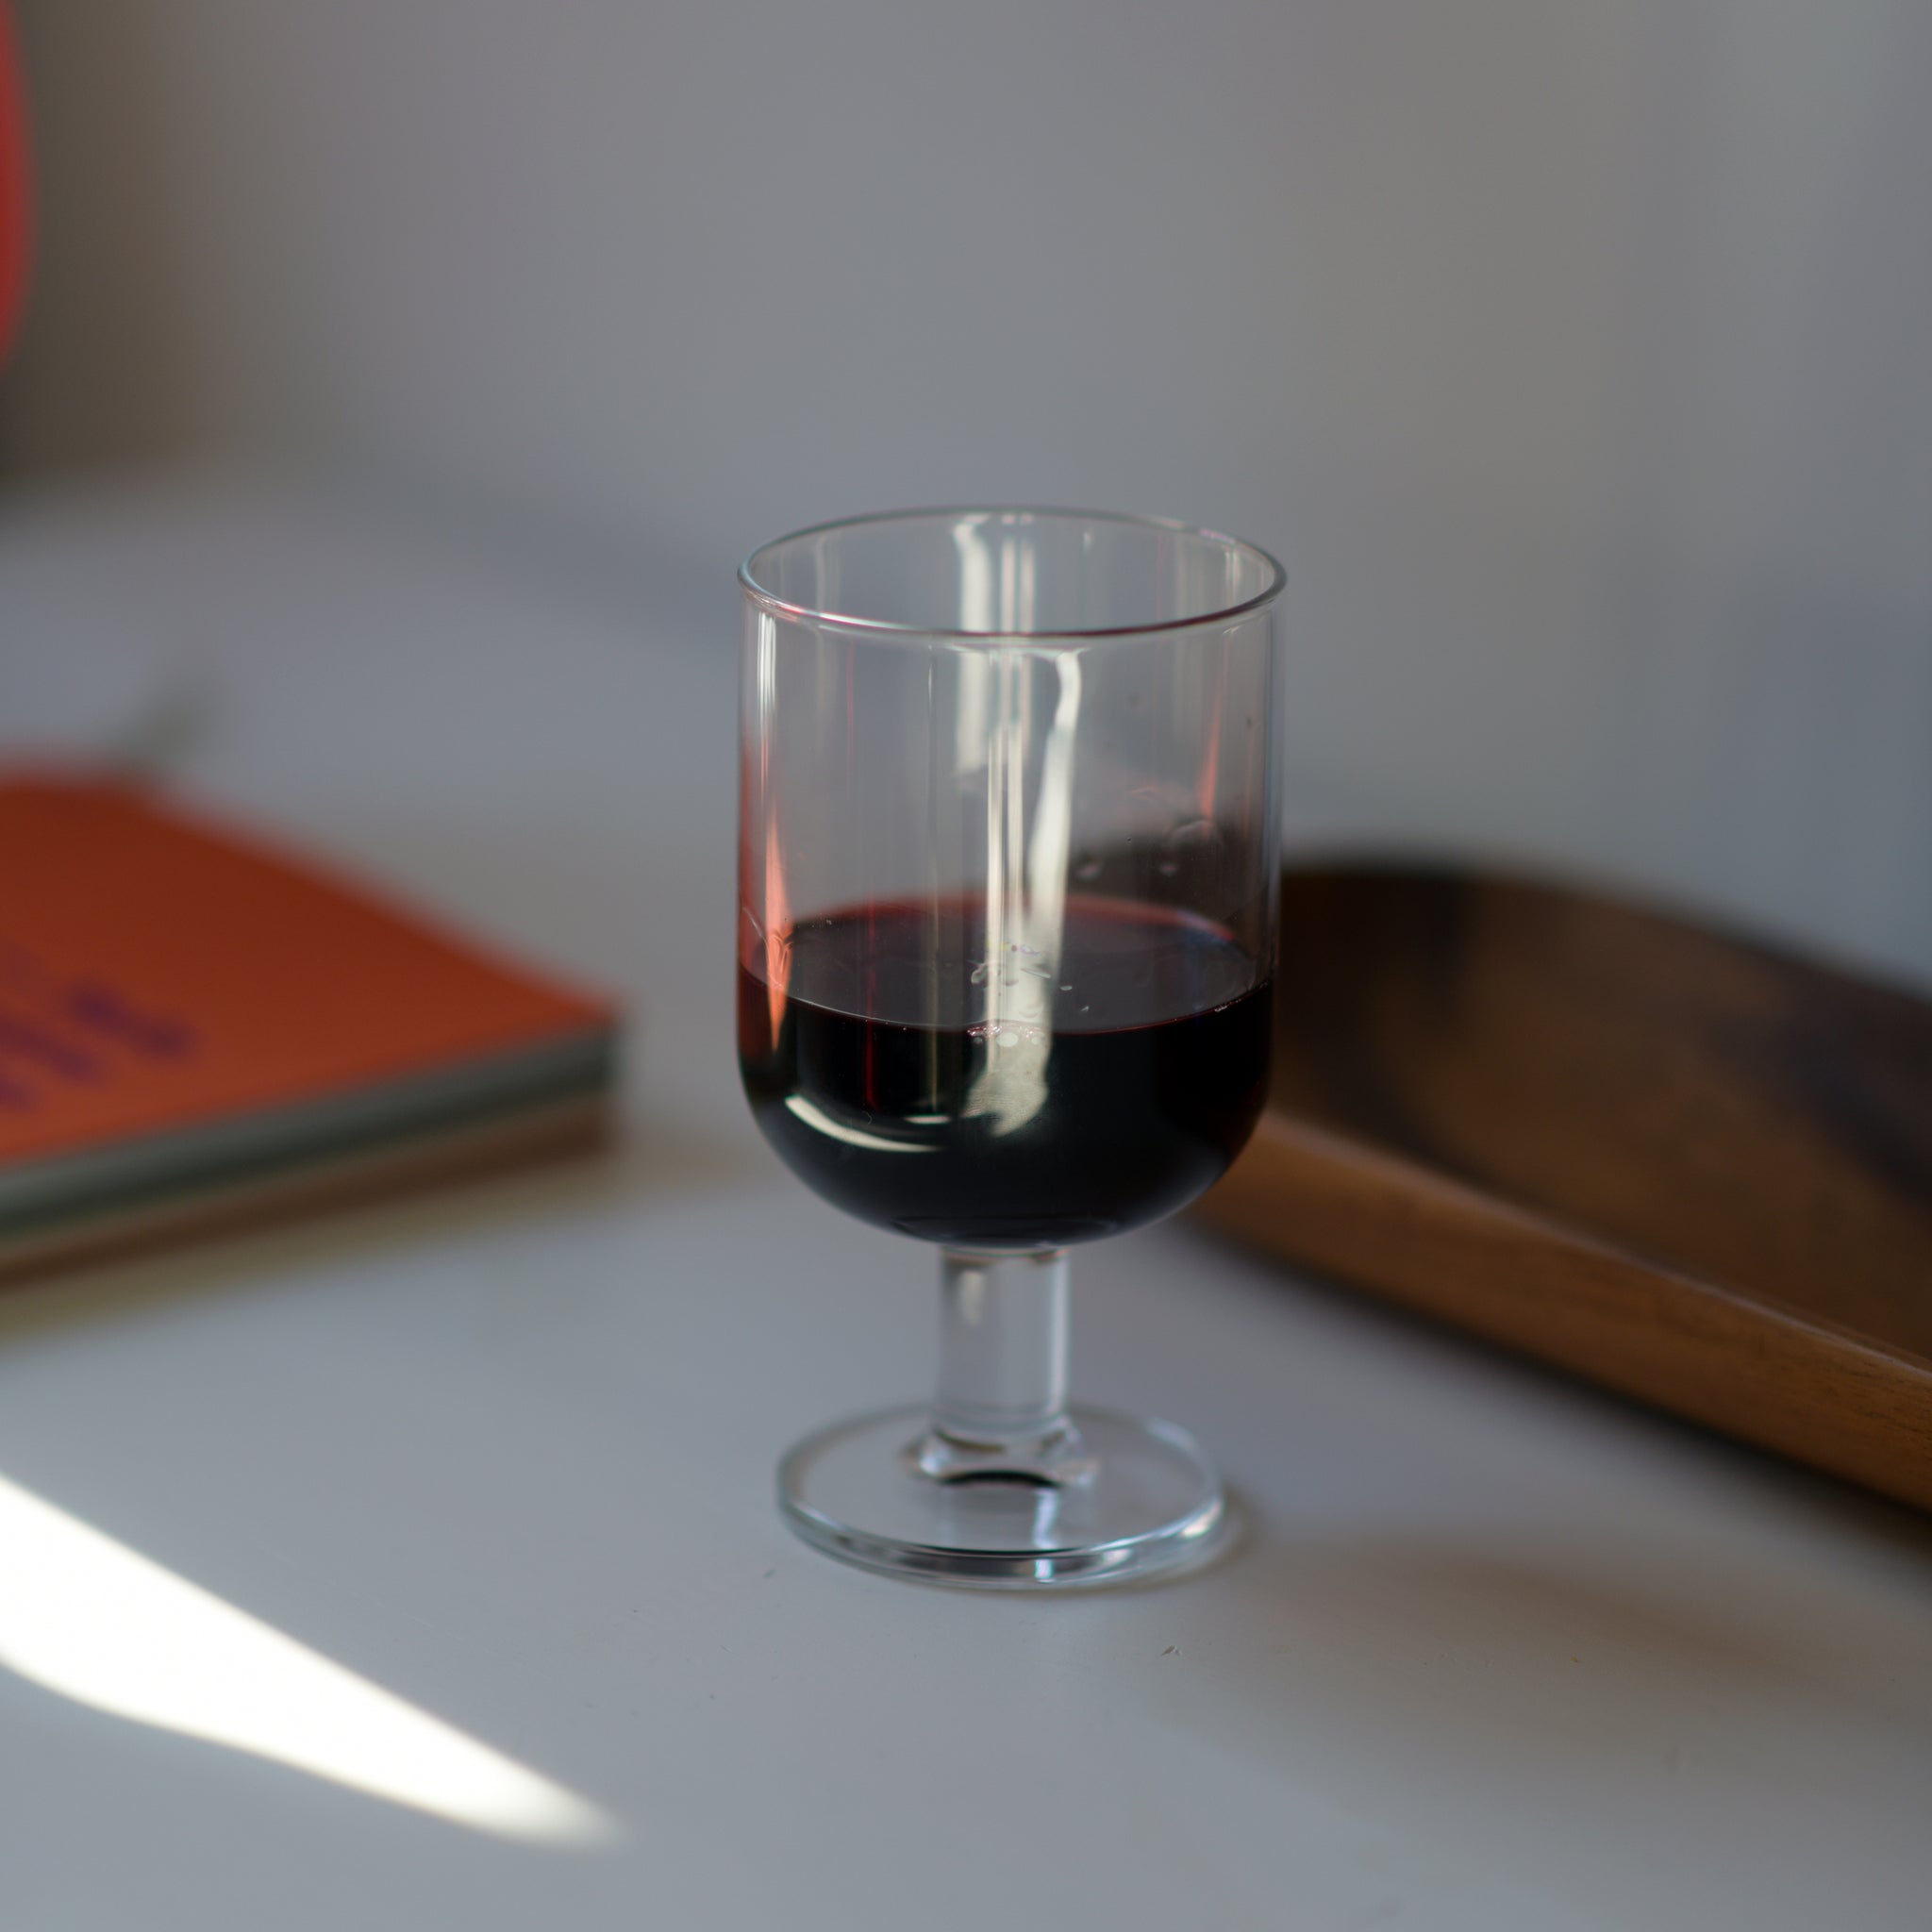 Hosteria 11.75 oz. Goblet Stackable Wine Glasses (Set of 6)